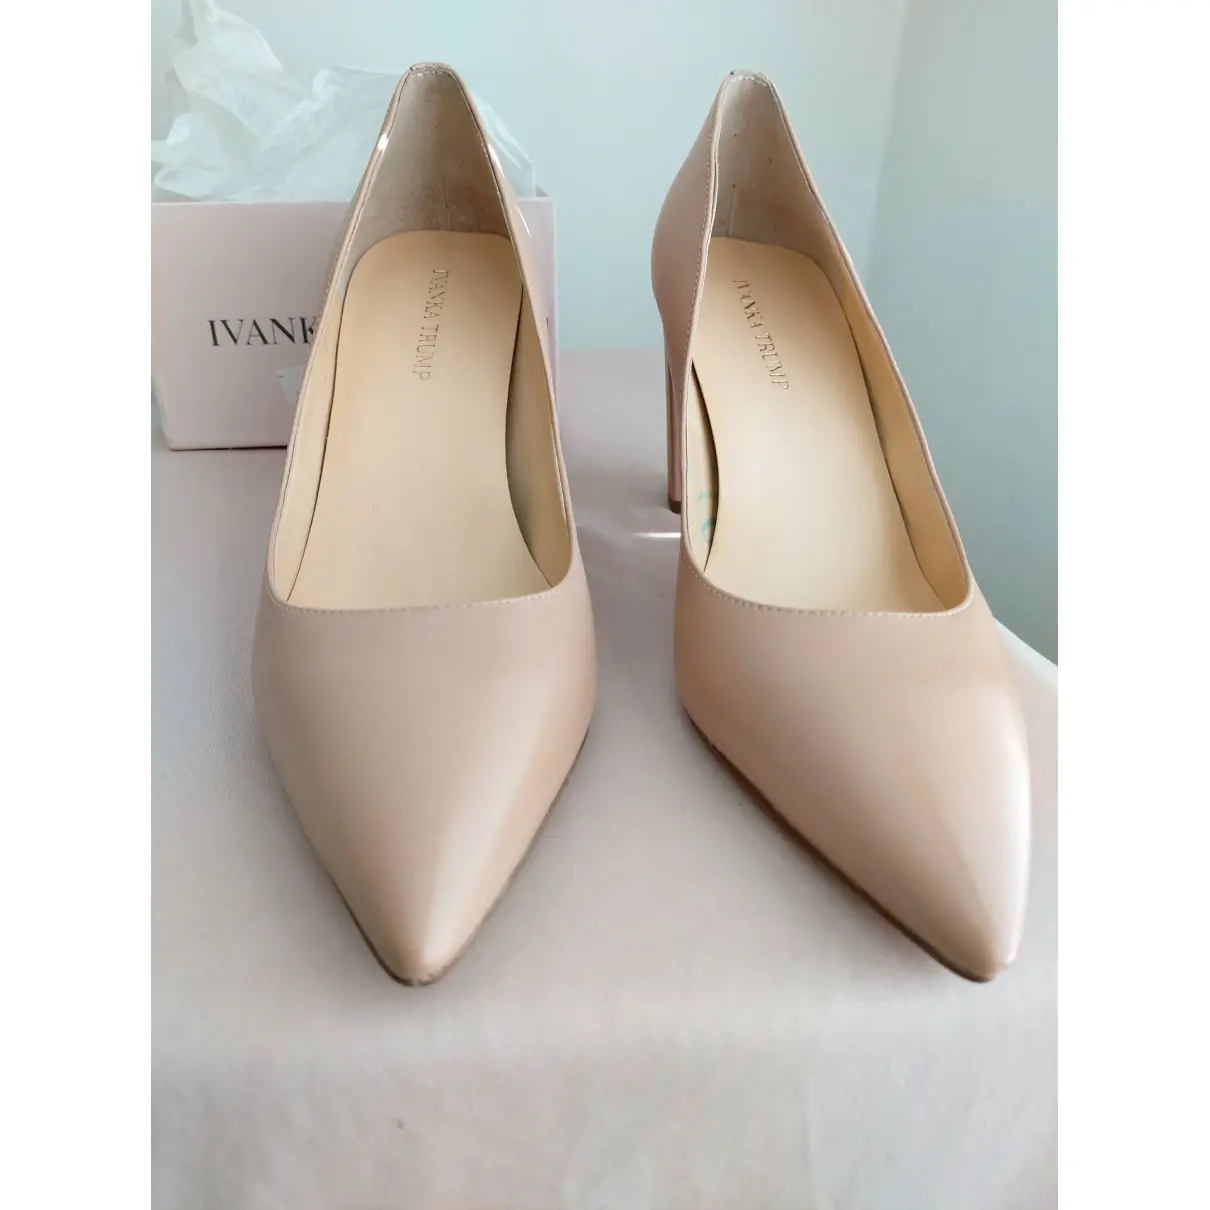 Buy Ivanka Trump Leather heels online